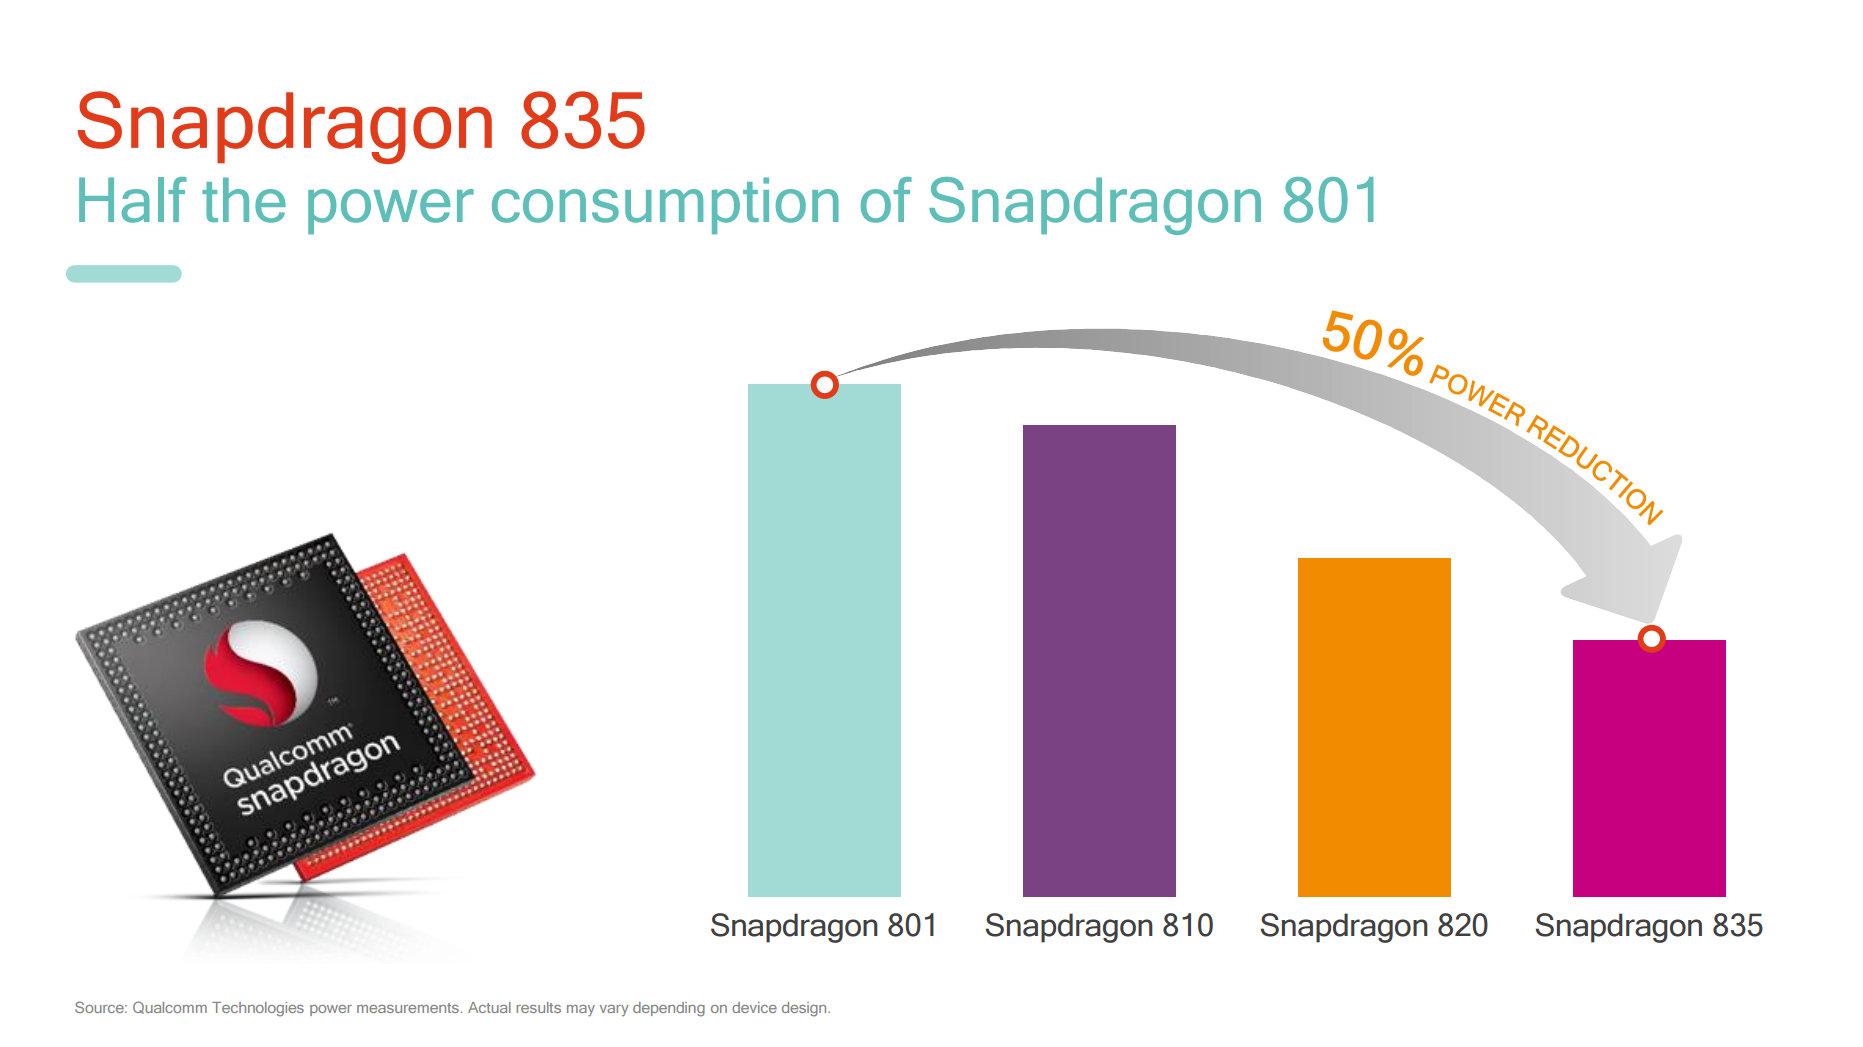 Energieverbrauch des Snapdragon 835 im Vergleich zu den Vorgängern